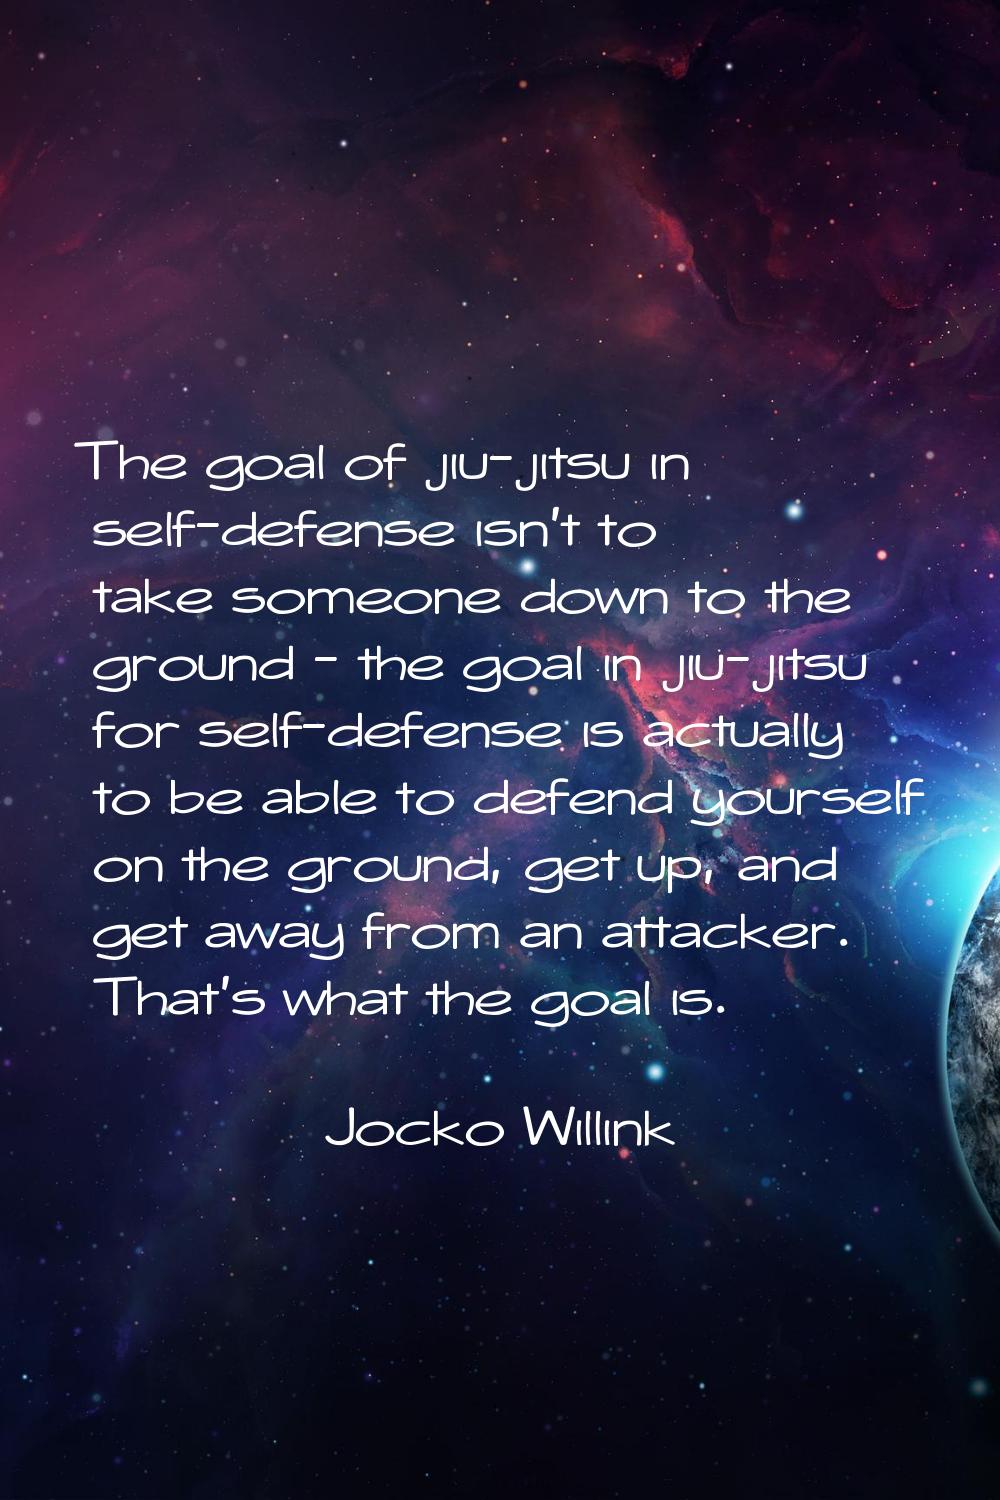 The goal of jiu-jitsu in self-defense isn't to take someone down to the ground - the goal in jiu-ji